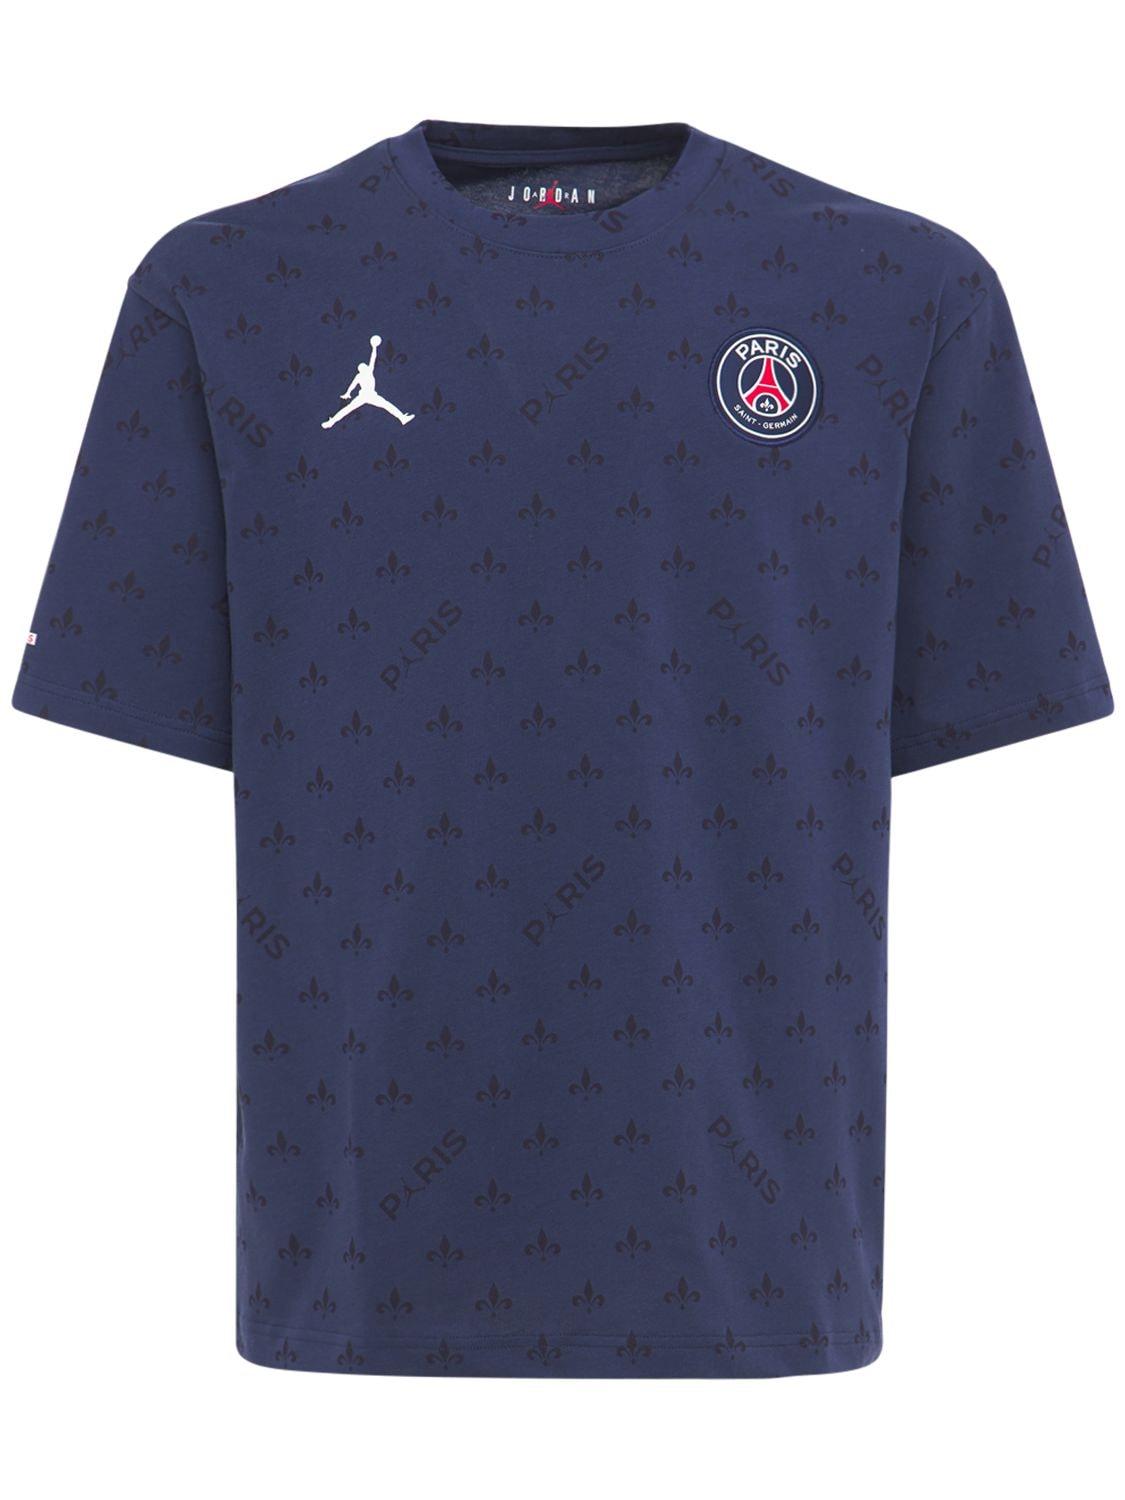 Nike Jordan Psg All Over Print T-shirt in Blue for Men | Lyst